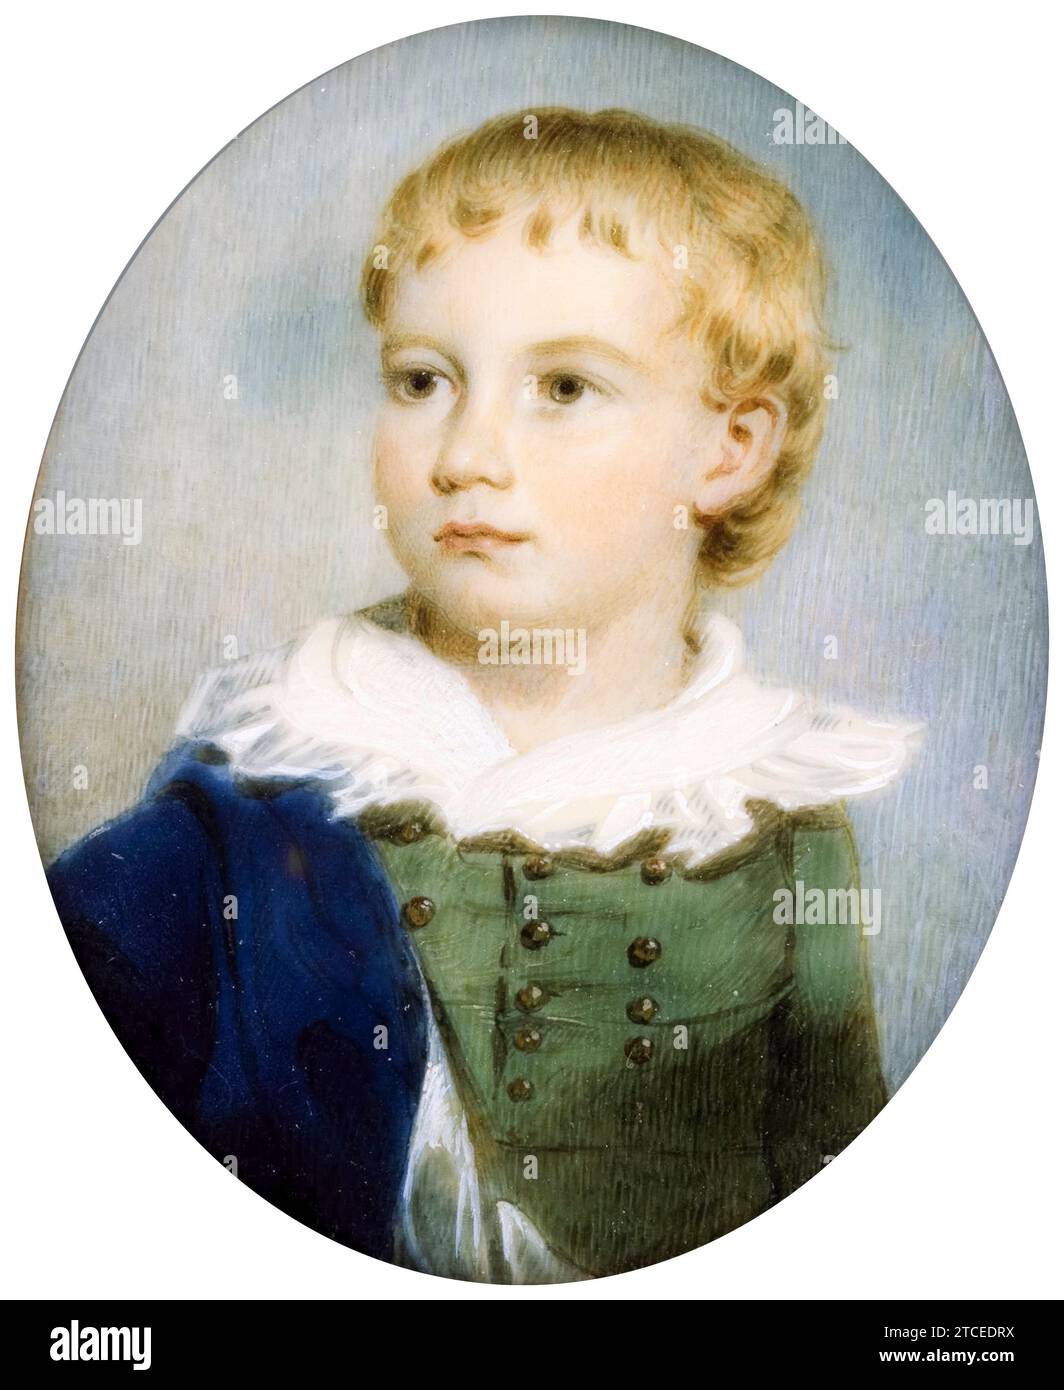 James Nixon, Ritratto di un ragazzo, ritratto in miniatura acquerello su avorio, 1805-1825 Foto Stock